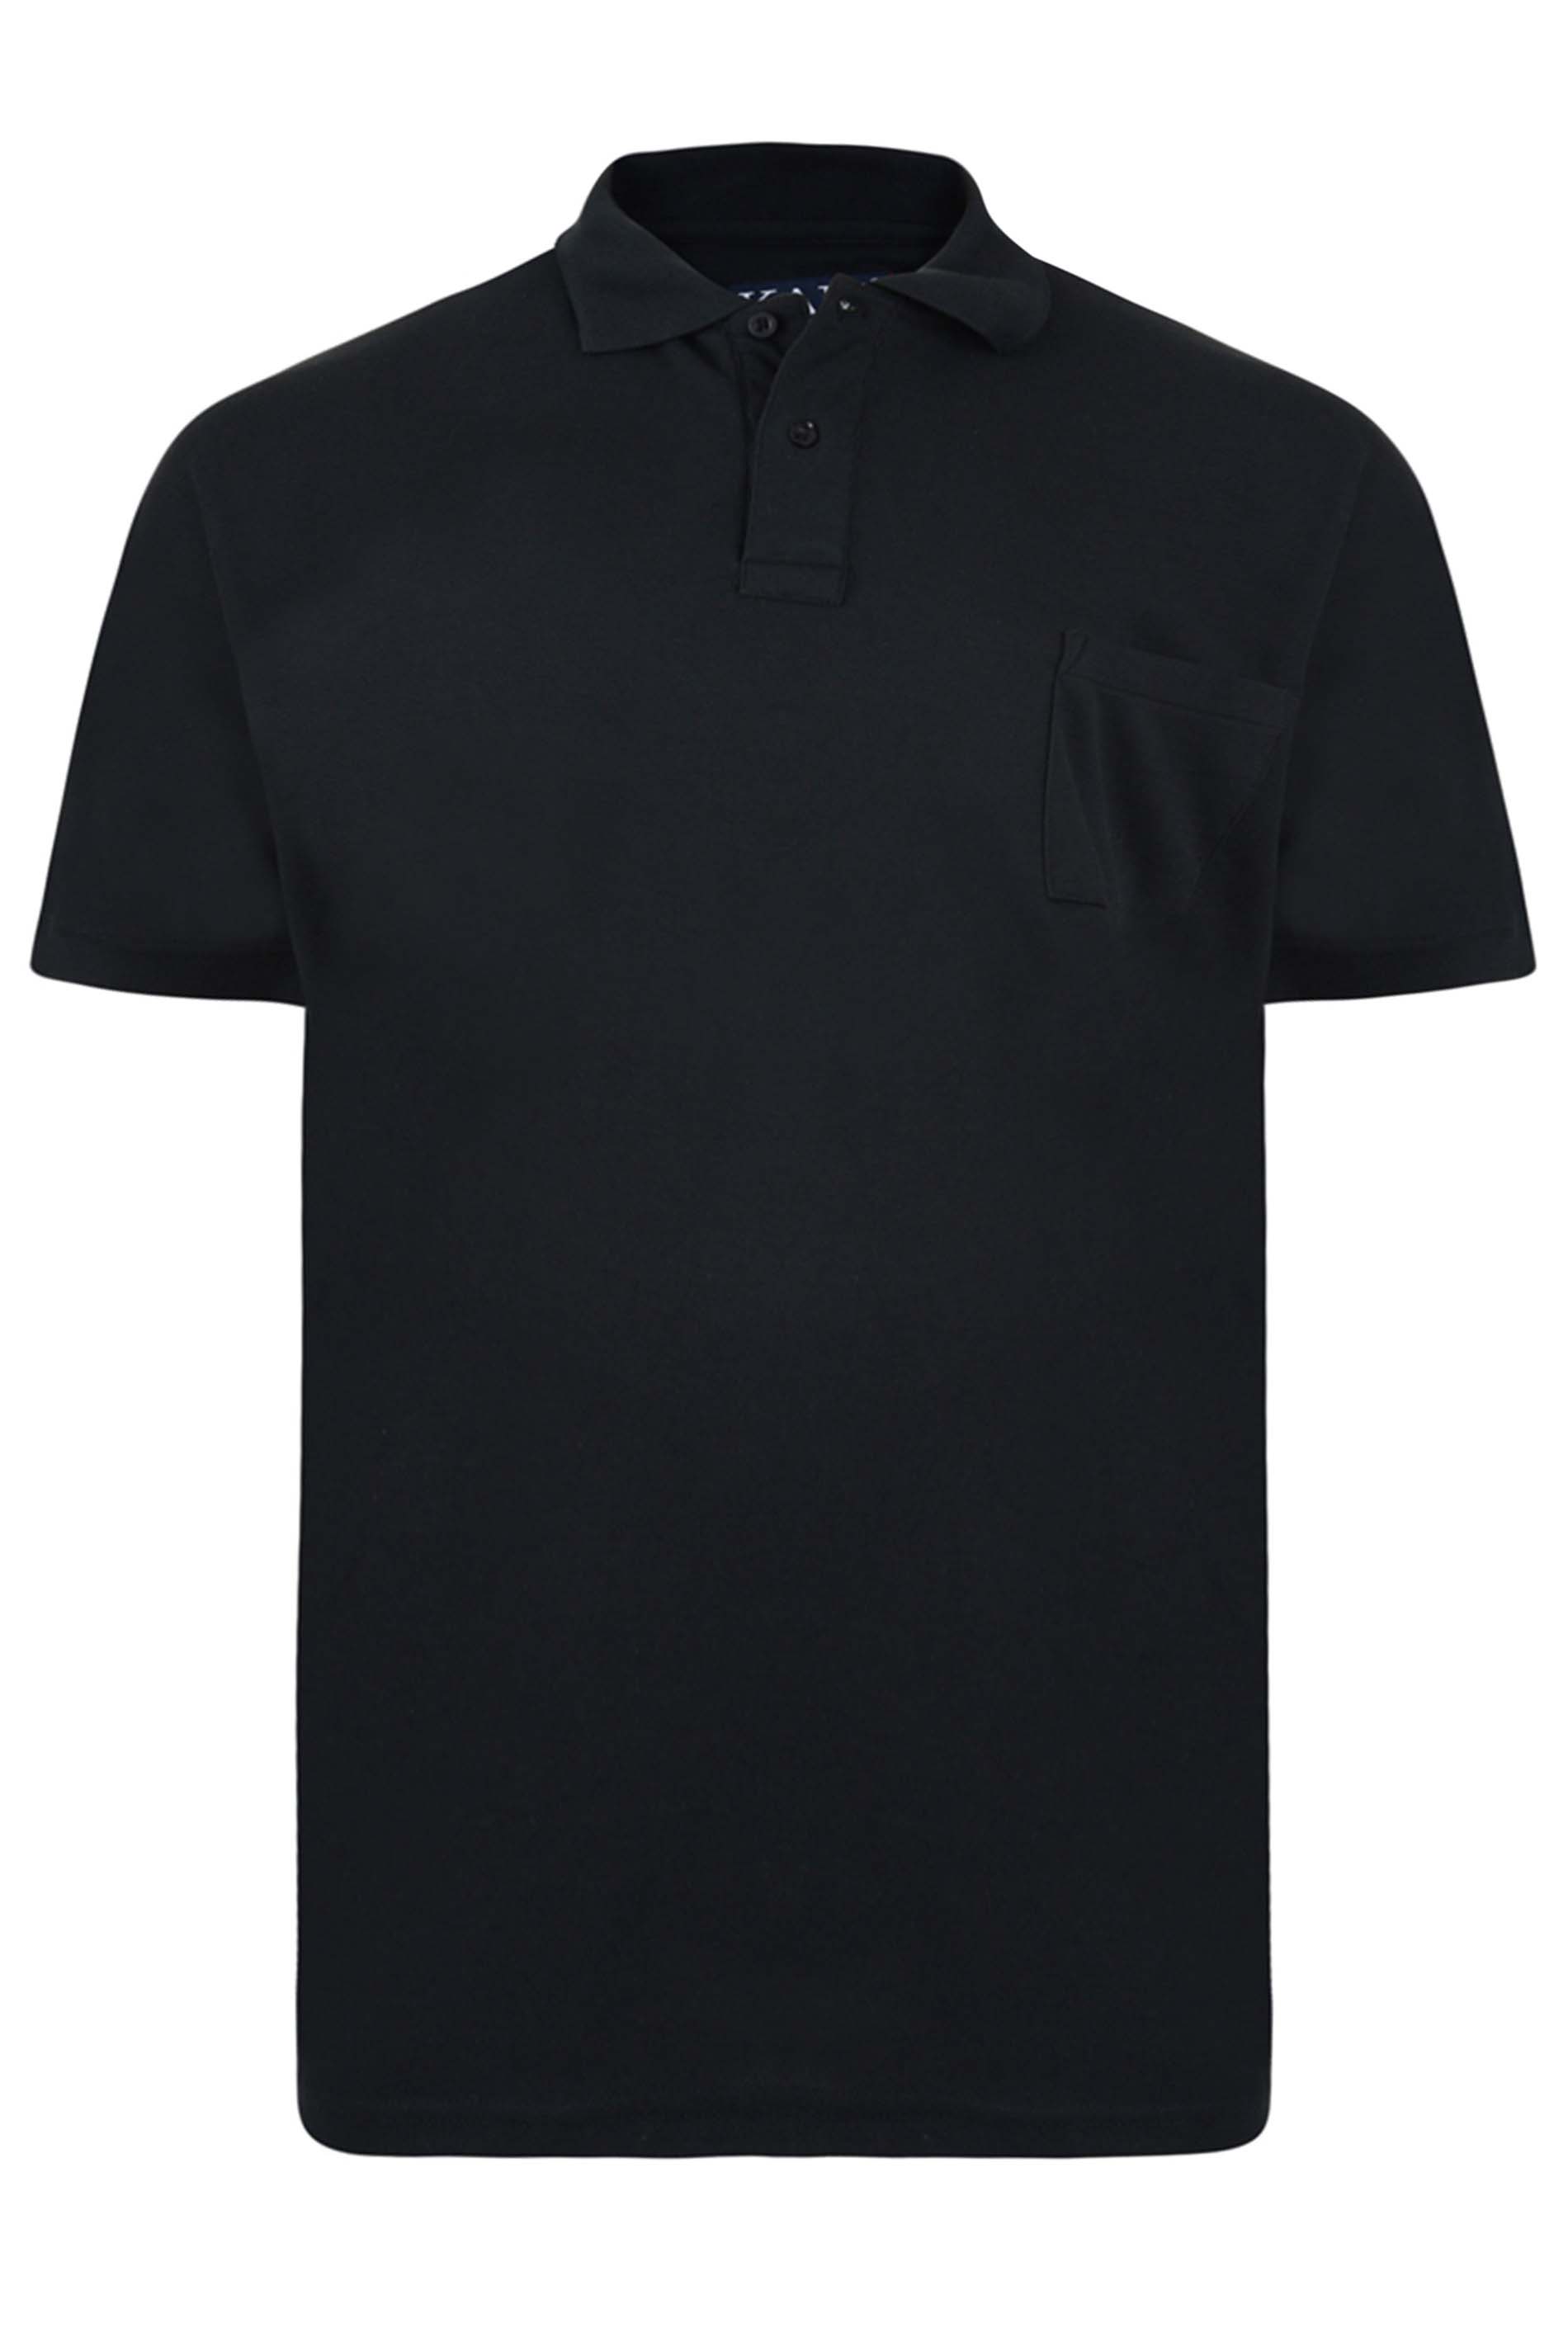 KAM Black Pocket Polo Shirt | BadRhino  2